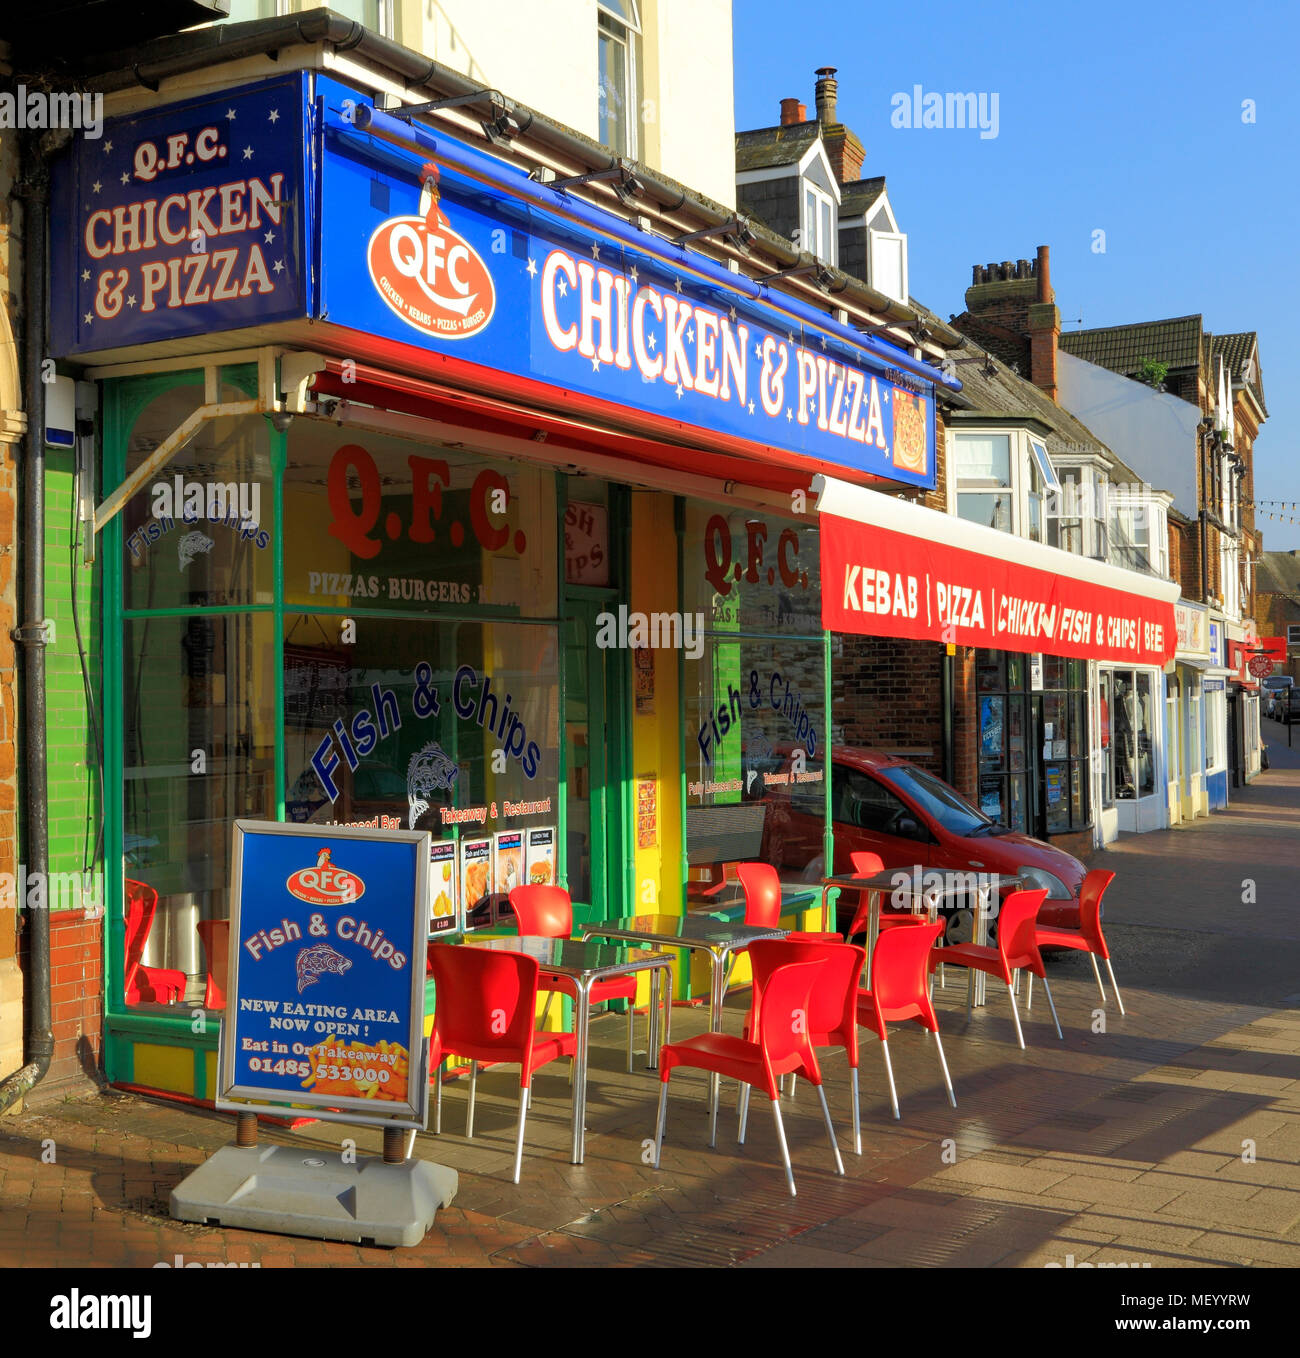 QFC, Pollo & Pizza, establecimientos de comida rápida, tienda, Hunstanton, Norfolk, Inglaterra, Reino Unido, tome distancia, comida, comidas, pollo, pizzas Foto de stock